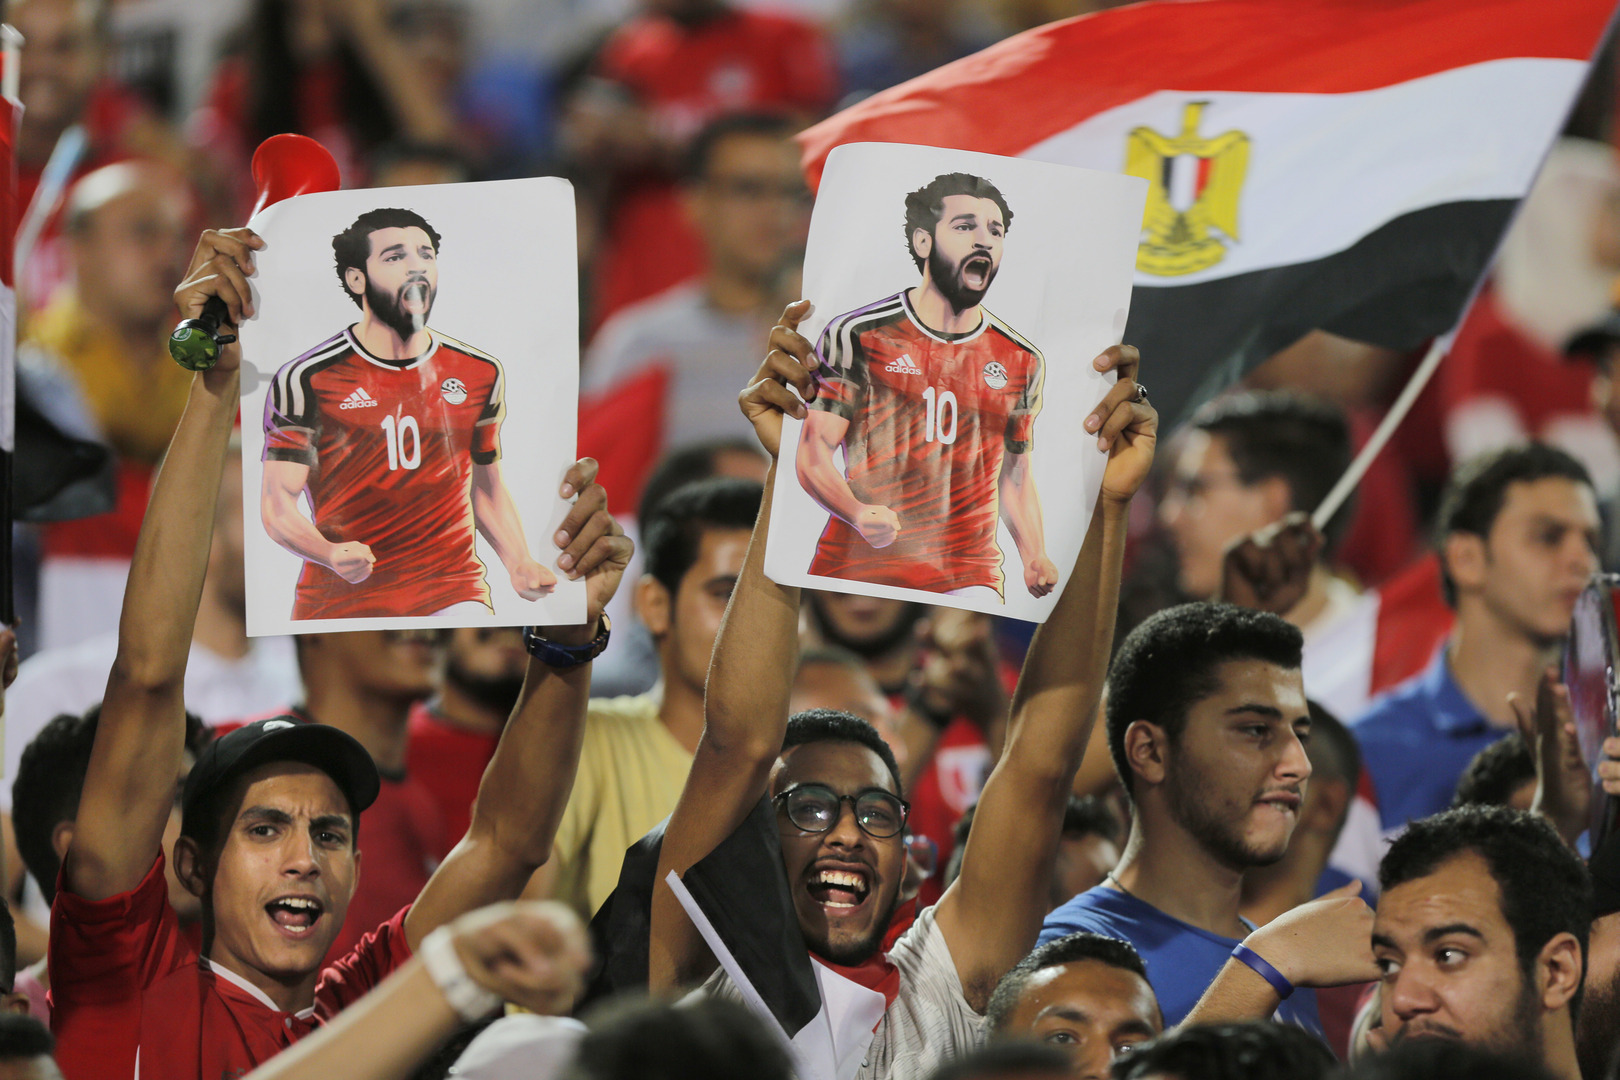 بعد هجوم أشهر شيوخ مصر على لعب ومشاهدة كرة القدم.. دار الإفتاء ترد وتوضح الحكم الشرعي